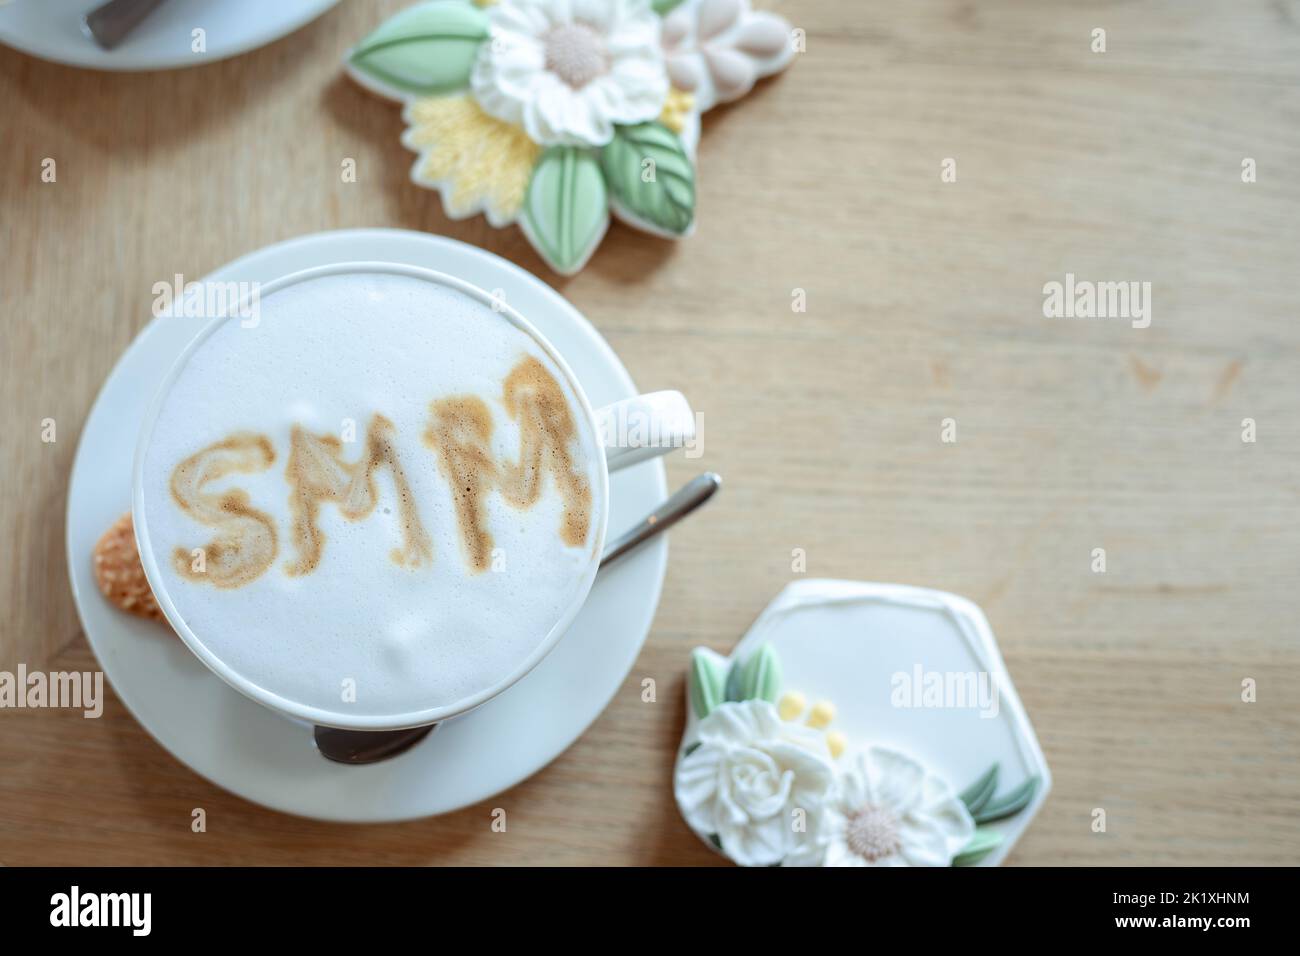 Foto Draufsicht auf Tasse heißen aromatisierten Kaffee mit weißem Schaum und schöne Puderkekse auf dem Tisch, freie Kopie Platz, Holzhintergrund. Soziale Medien Stockfoto